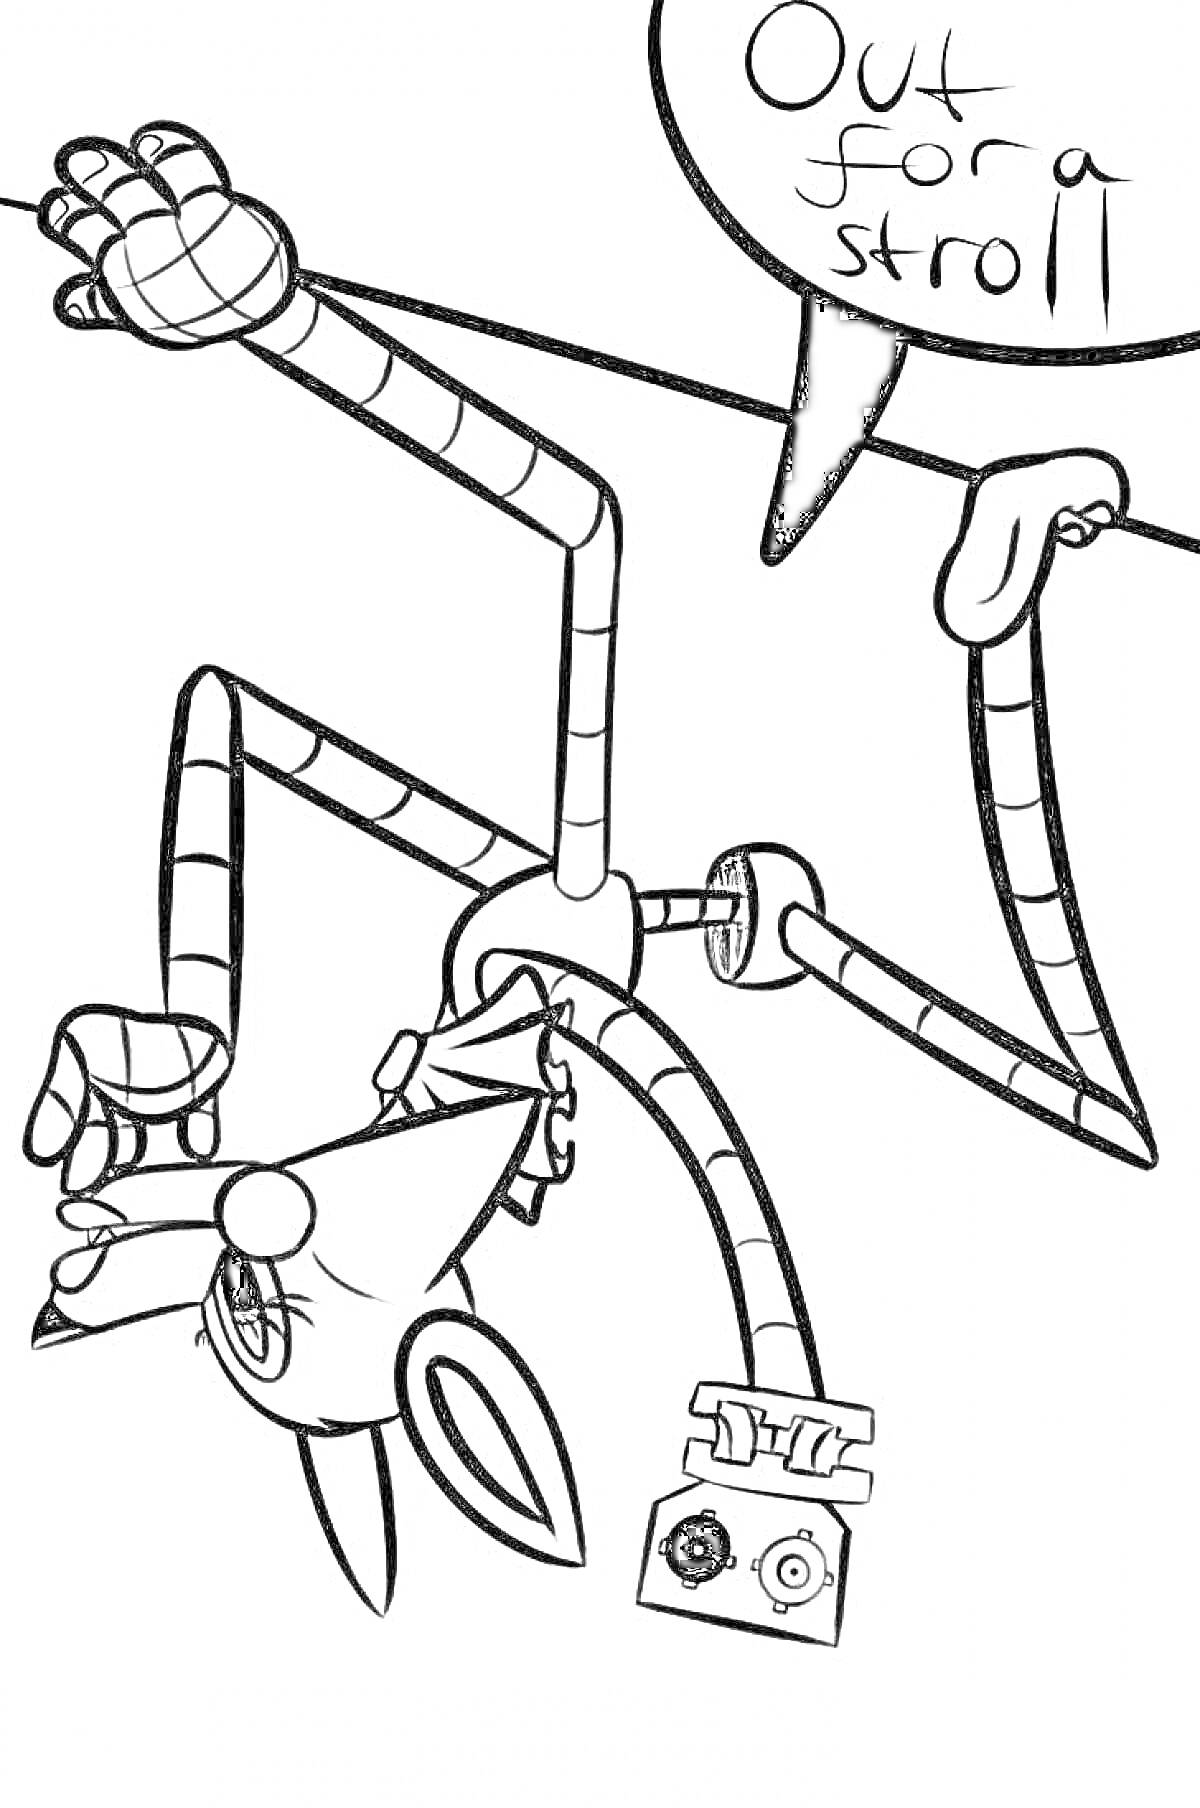 Раскраска Аниматроник Мангл с вытянутыми конечностями и надписью 